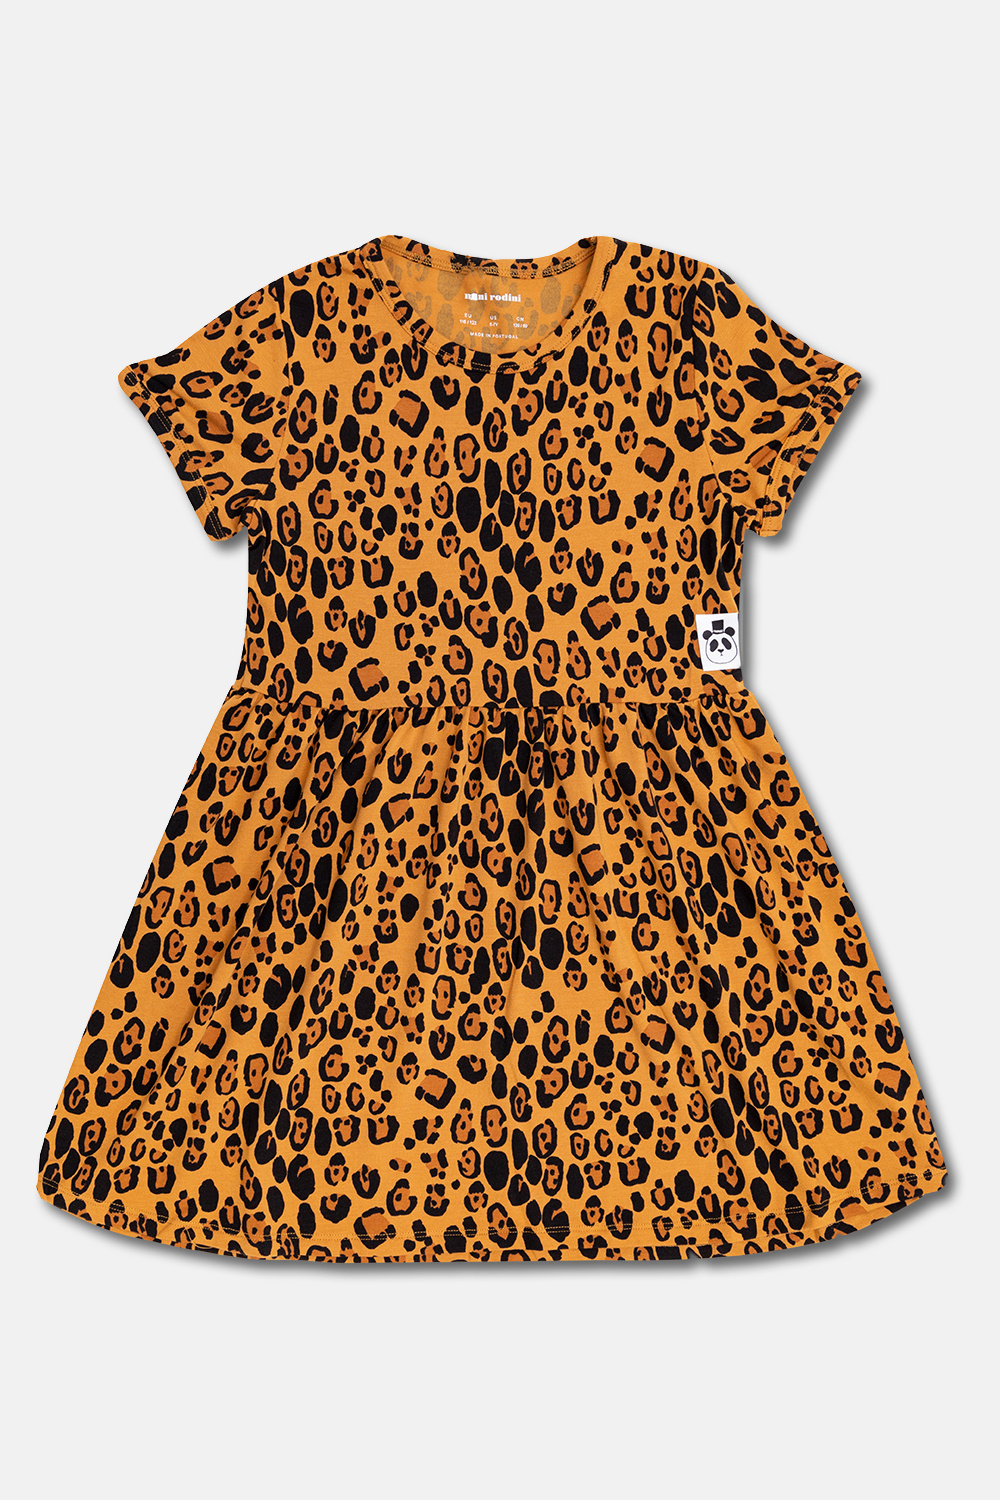 Mini Rodini Leopard-print Sleek dress